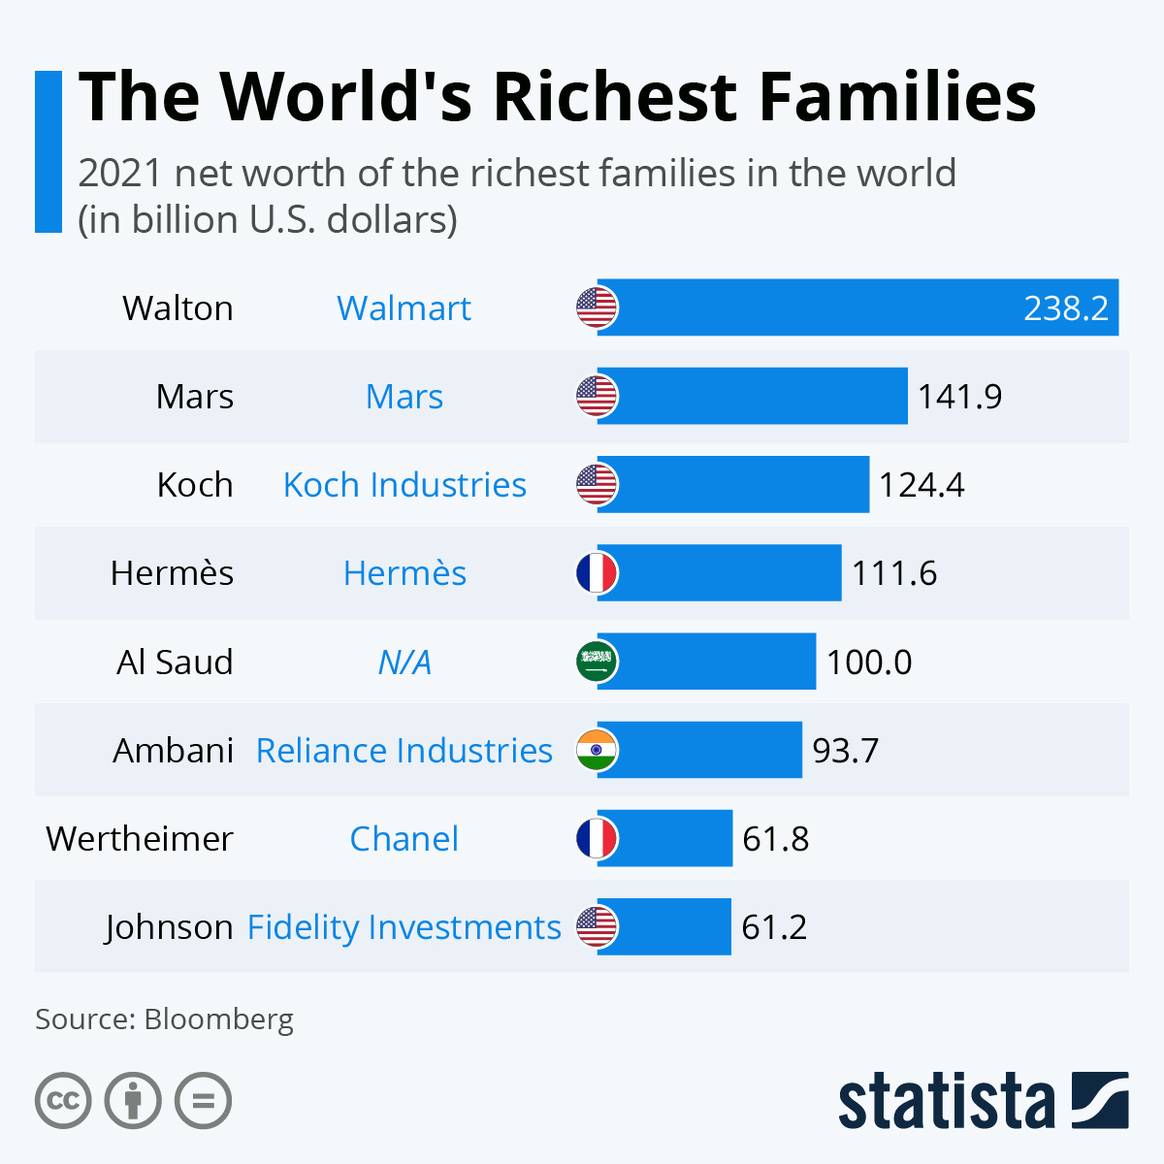 Photo Credits: Familias más ricas del mundo de 2021, según Bloomberg. Statista.